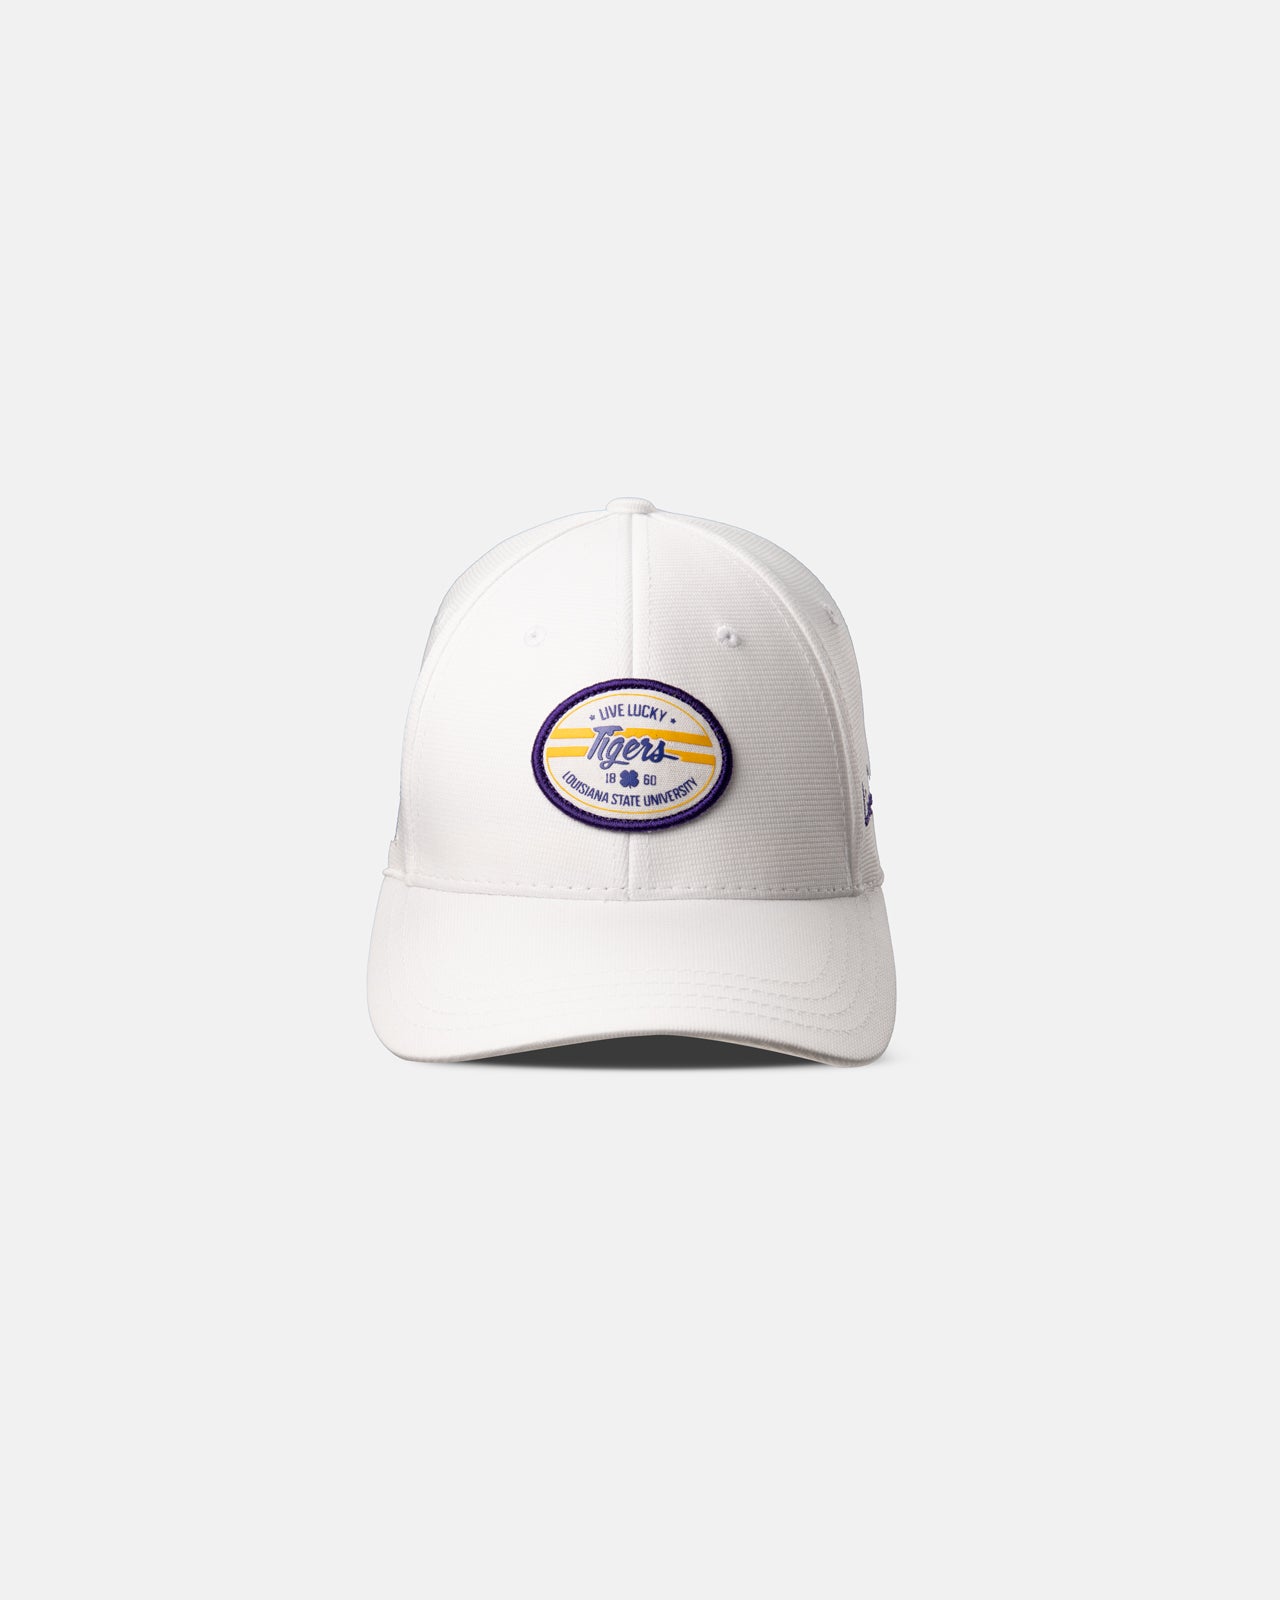 Louisiana State University Hats, Snapback, LSU Tigers Caps